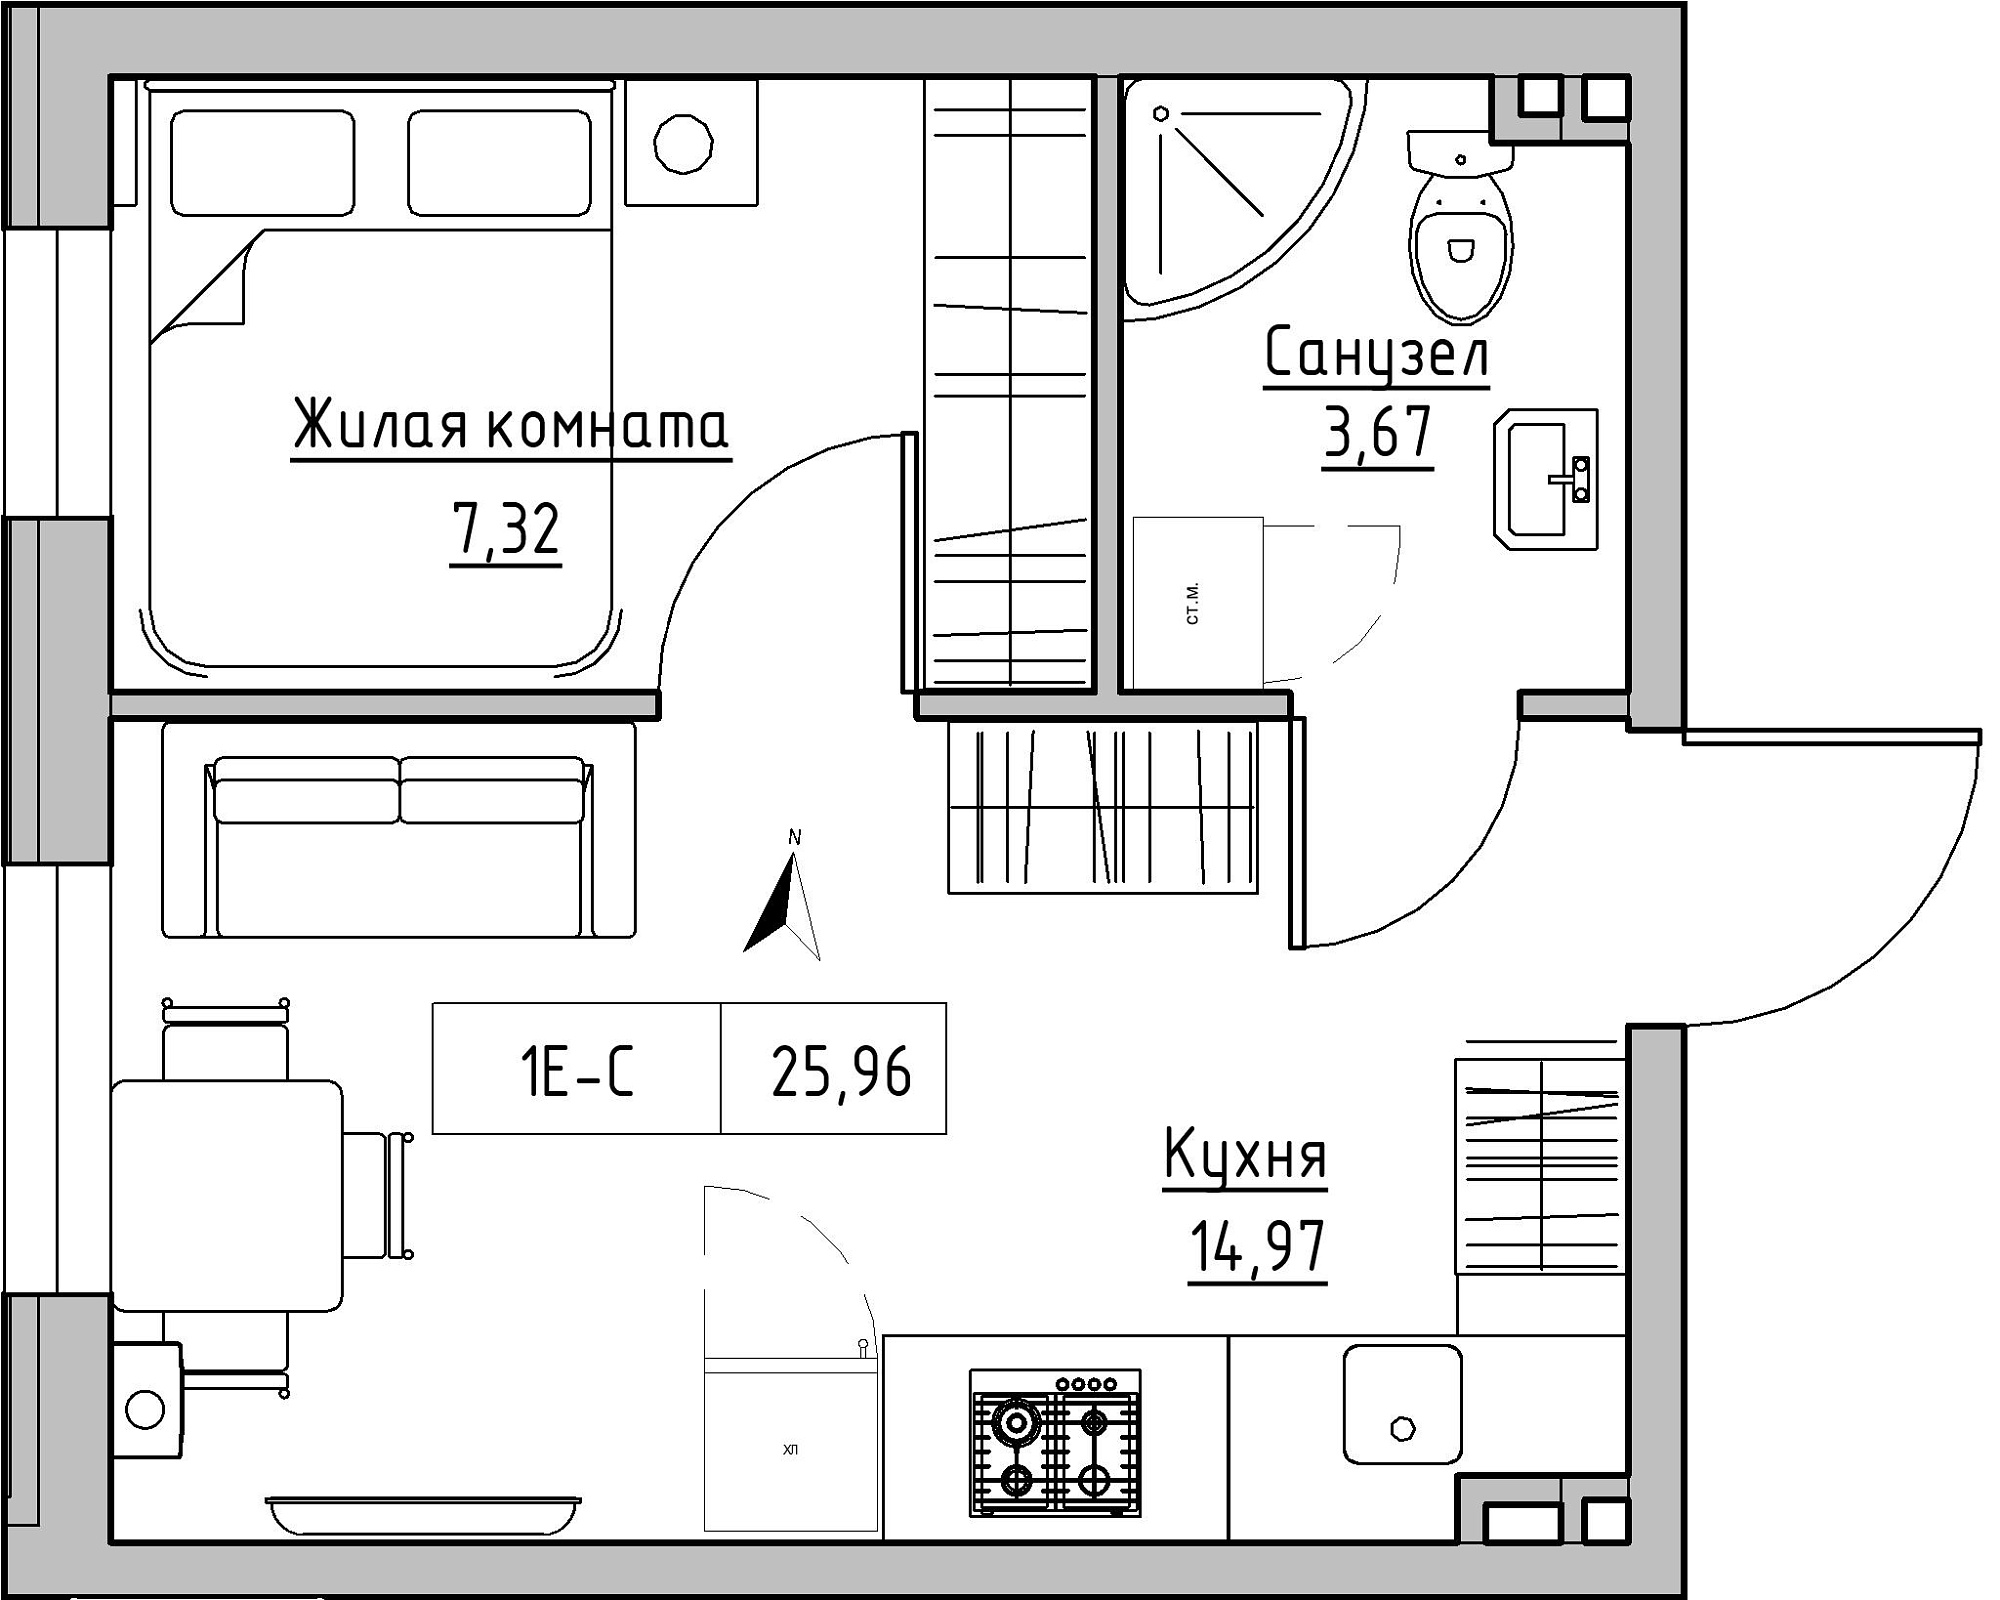 Планування 1-к квартира площею 25.96м2, KS-024-01/0012.